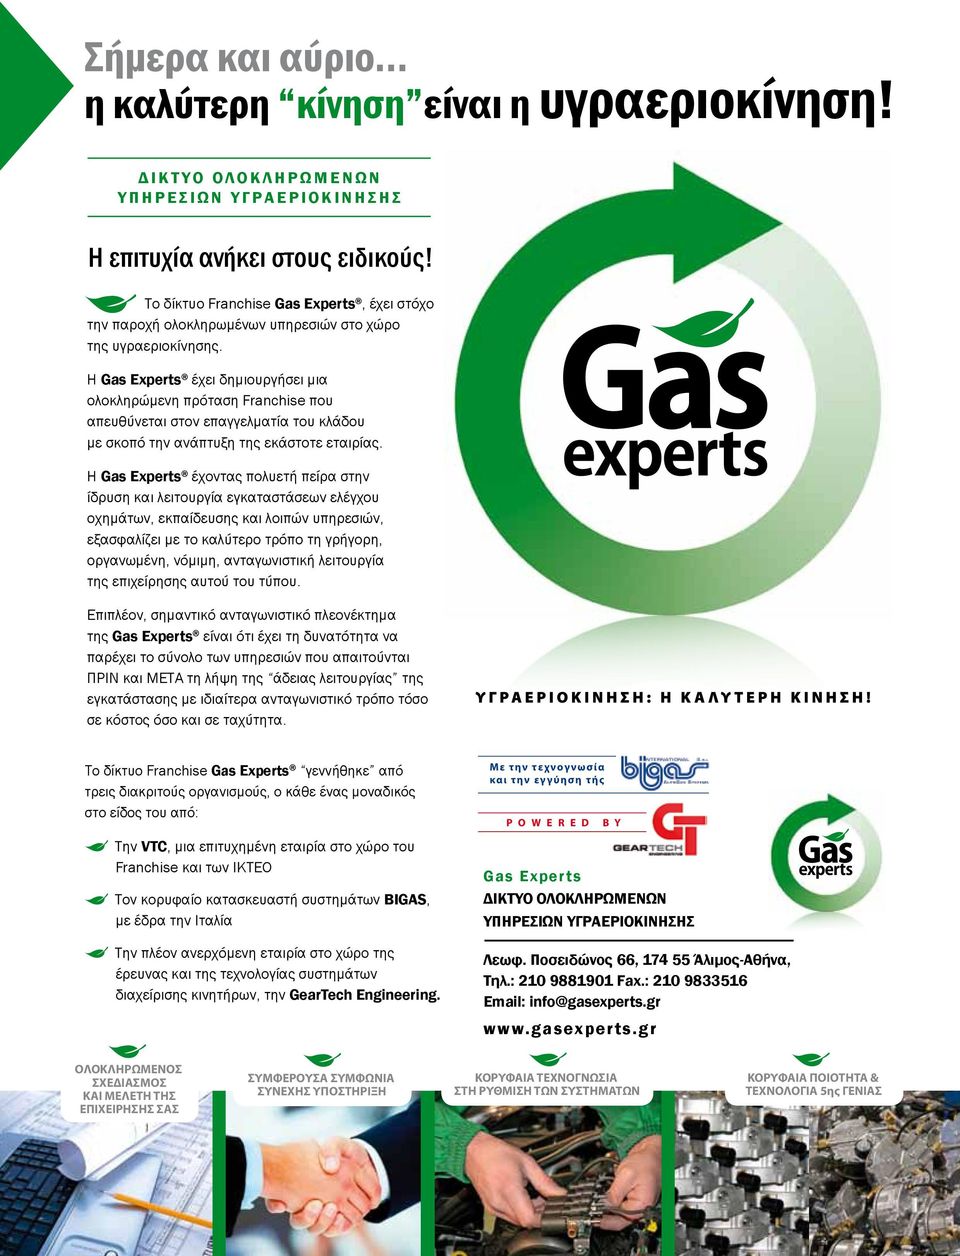 Η Gas Experts έχει δημιουργήσει μια ολοκληρώμενη πρόταση Franchise που απευθύνεται στον επαγγελματία του κλάδου με σκοπό την ανάπτυξη της εκάστοτε εταιρίας.